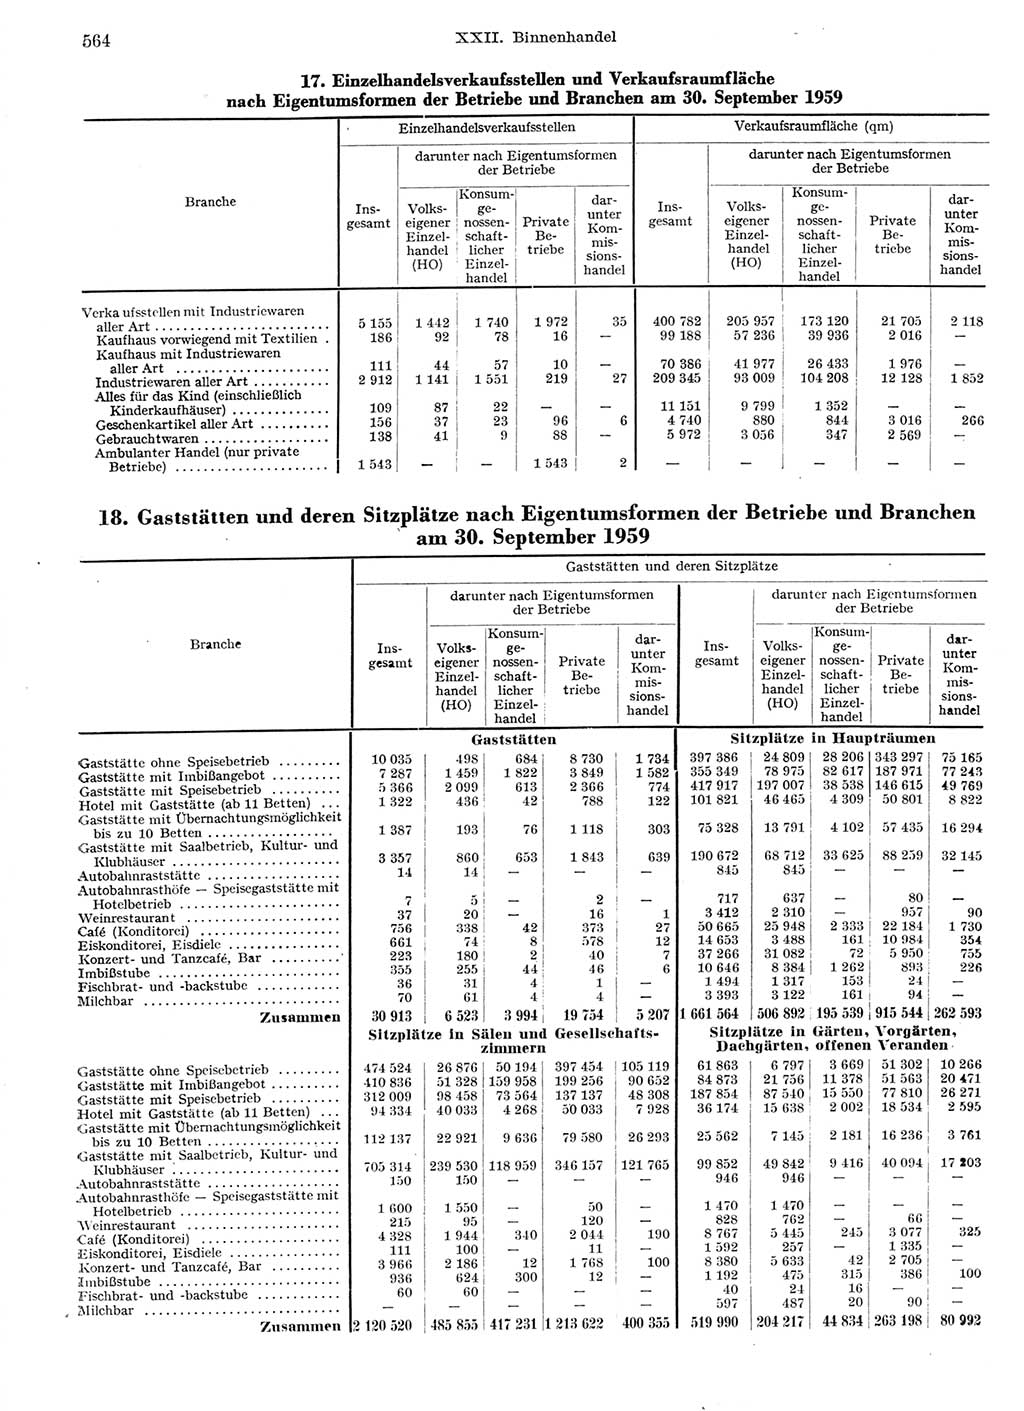 Statistisches Jahrbuch der Deutschen Demokratischen Republik (DDR) 1959, Seite 564 (Stat. Jb. DDR 1959, S. 564)